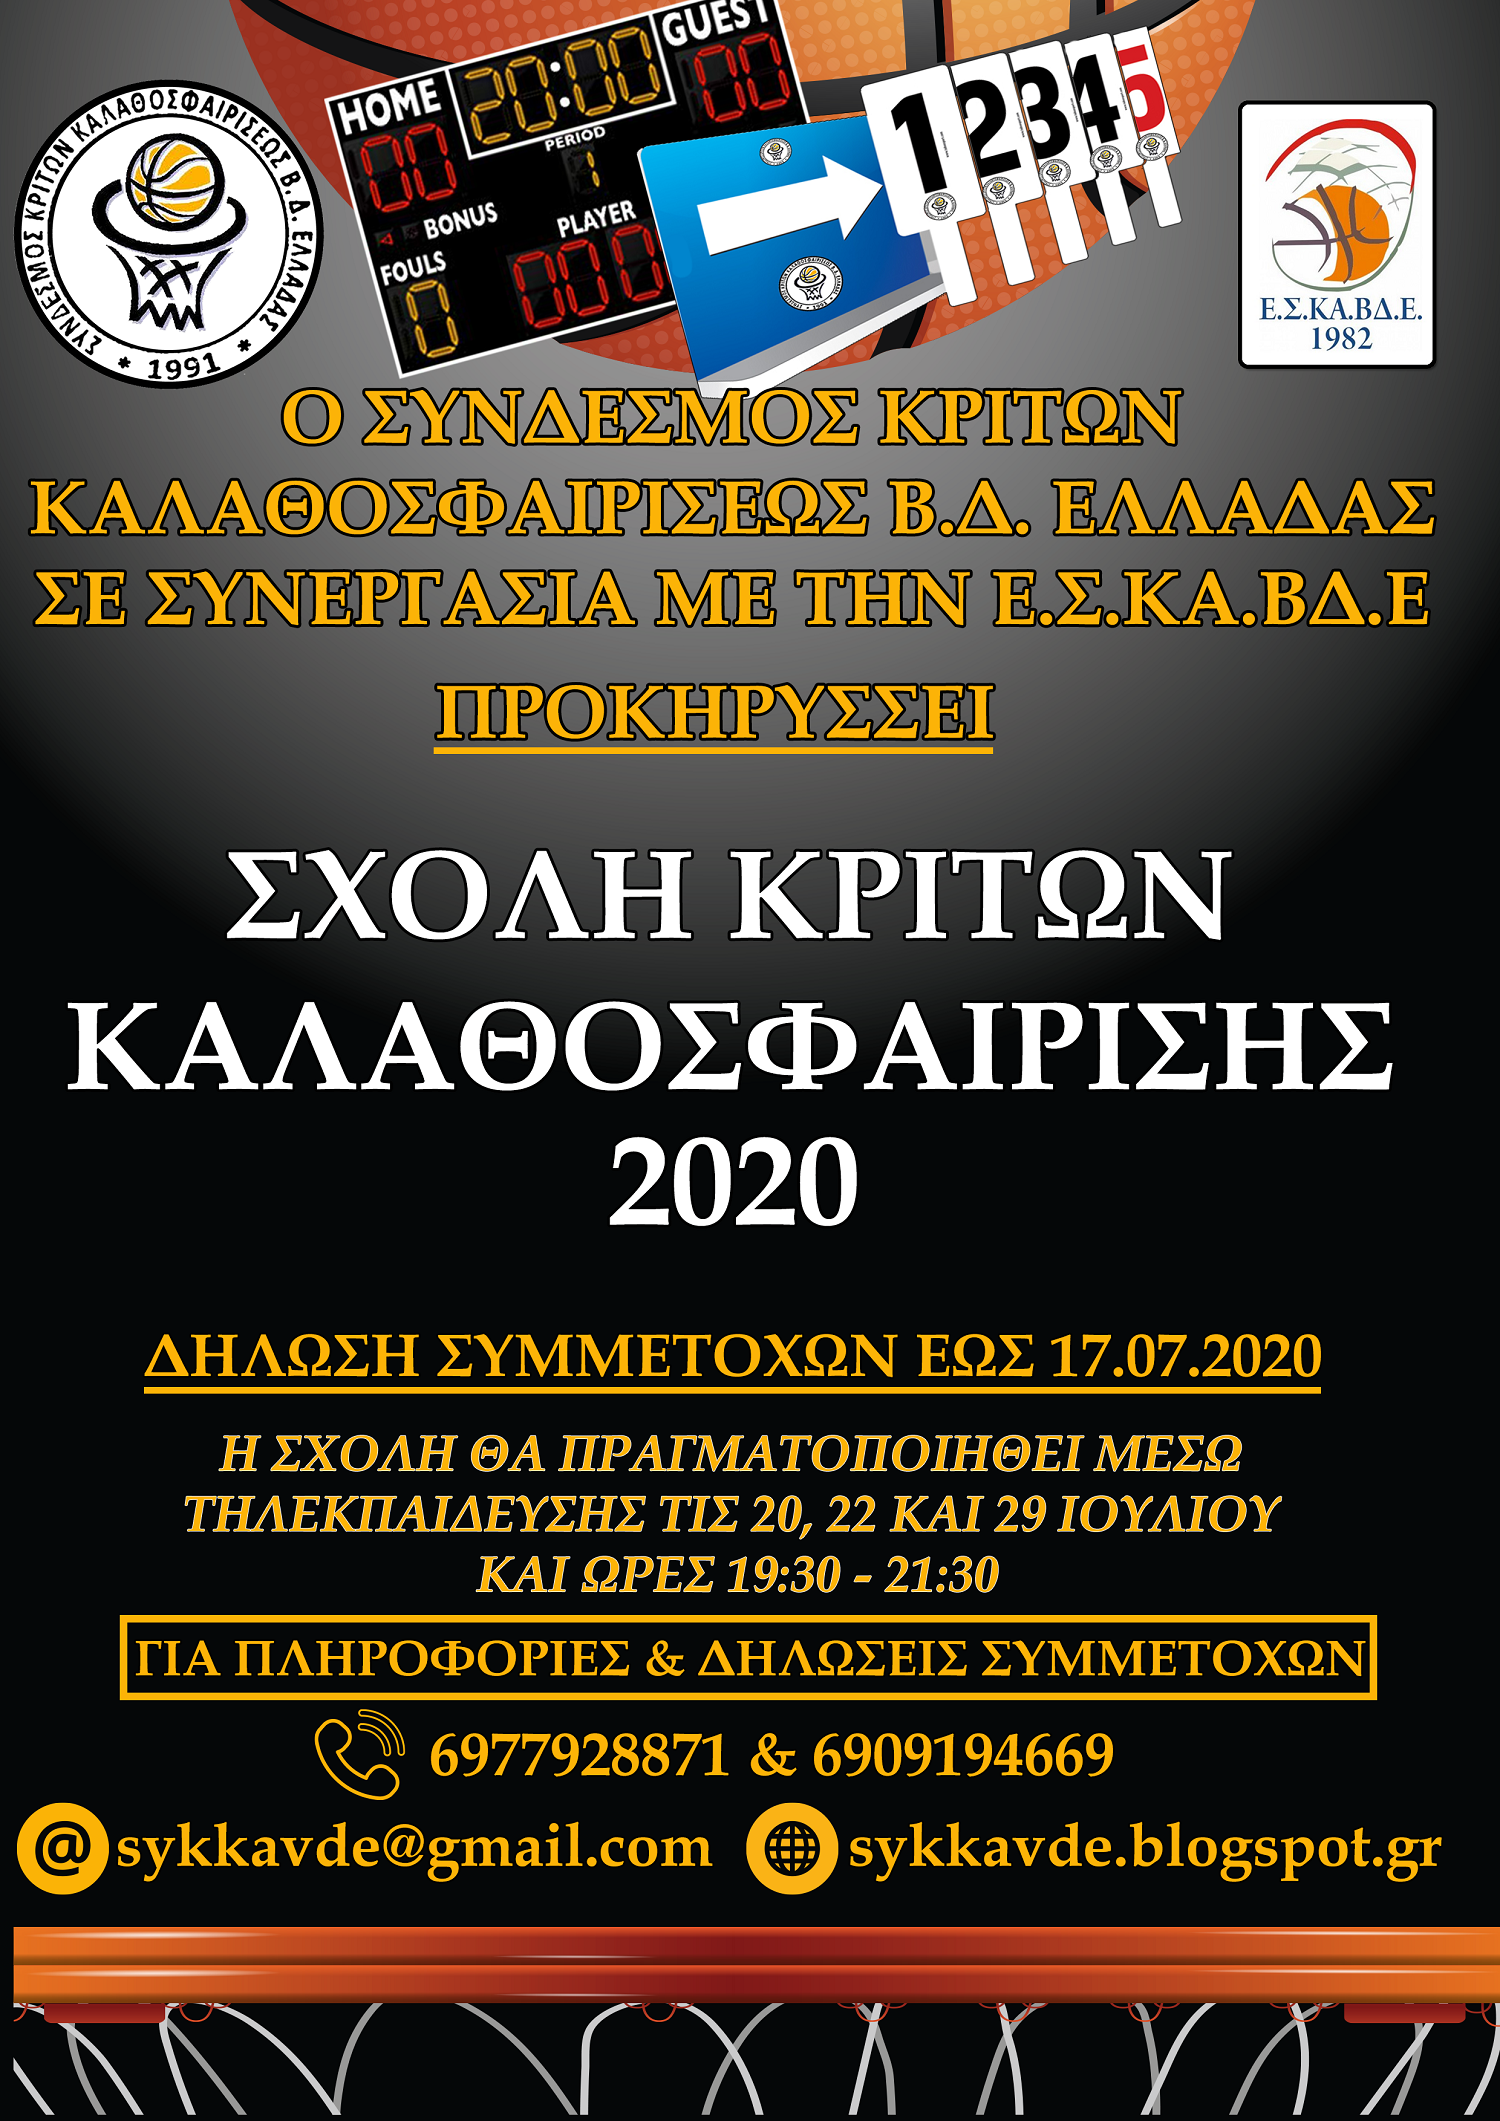 Σχολή Κριτών Καλαθοσφαίρισης για την Βορειοδυτική Ελλάδα